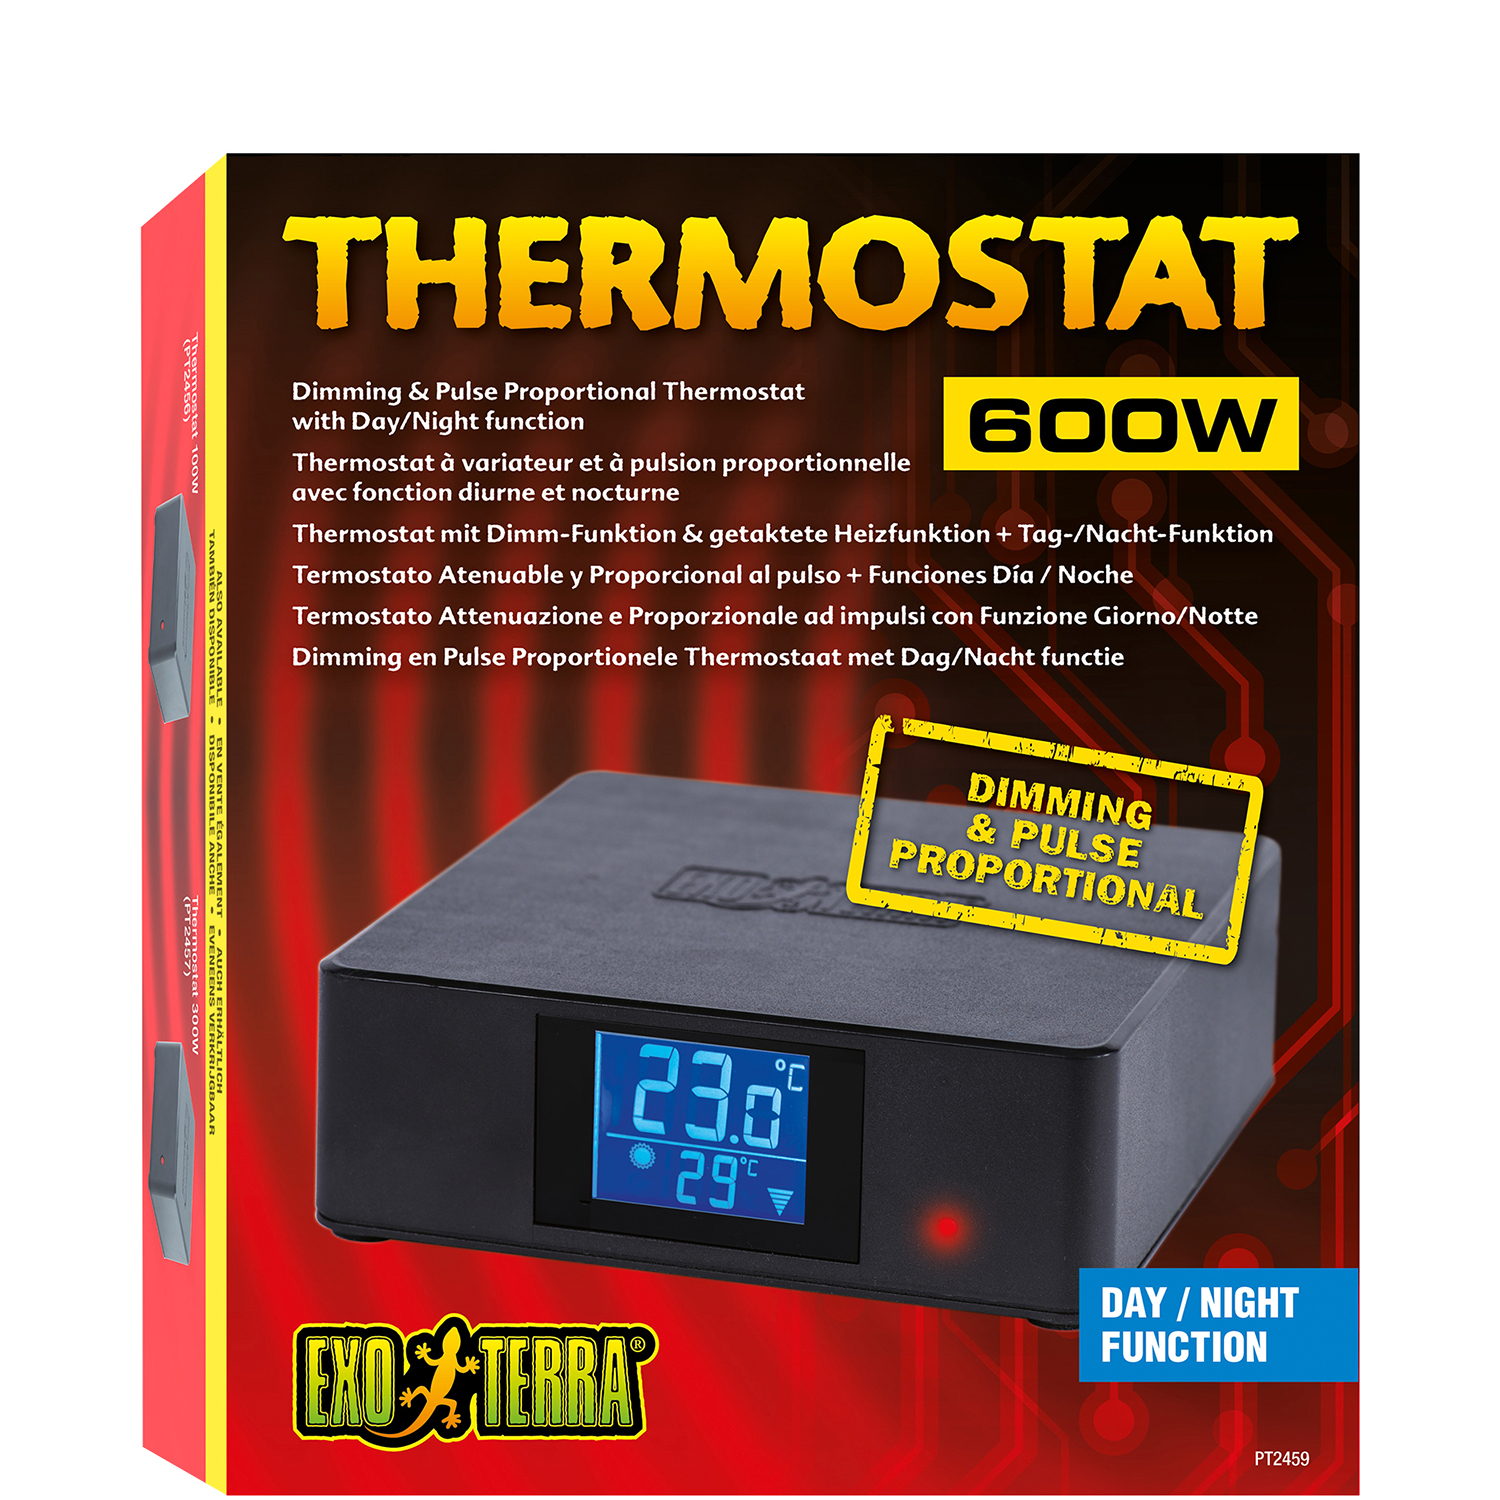 Thermostats Avec Modes Marche-arrêt, Variable Ou À Pulsion Proportionnelle?